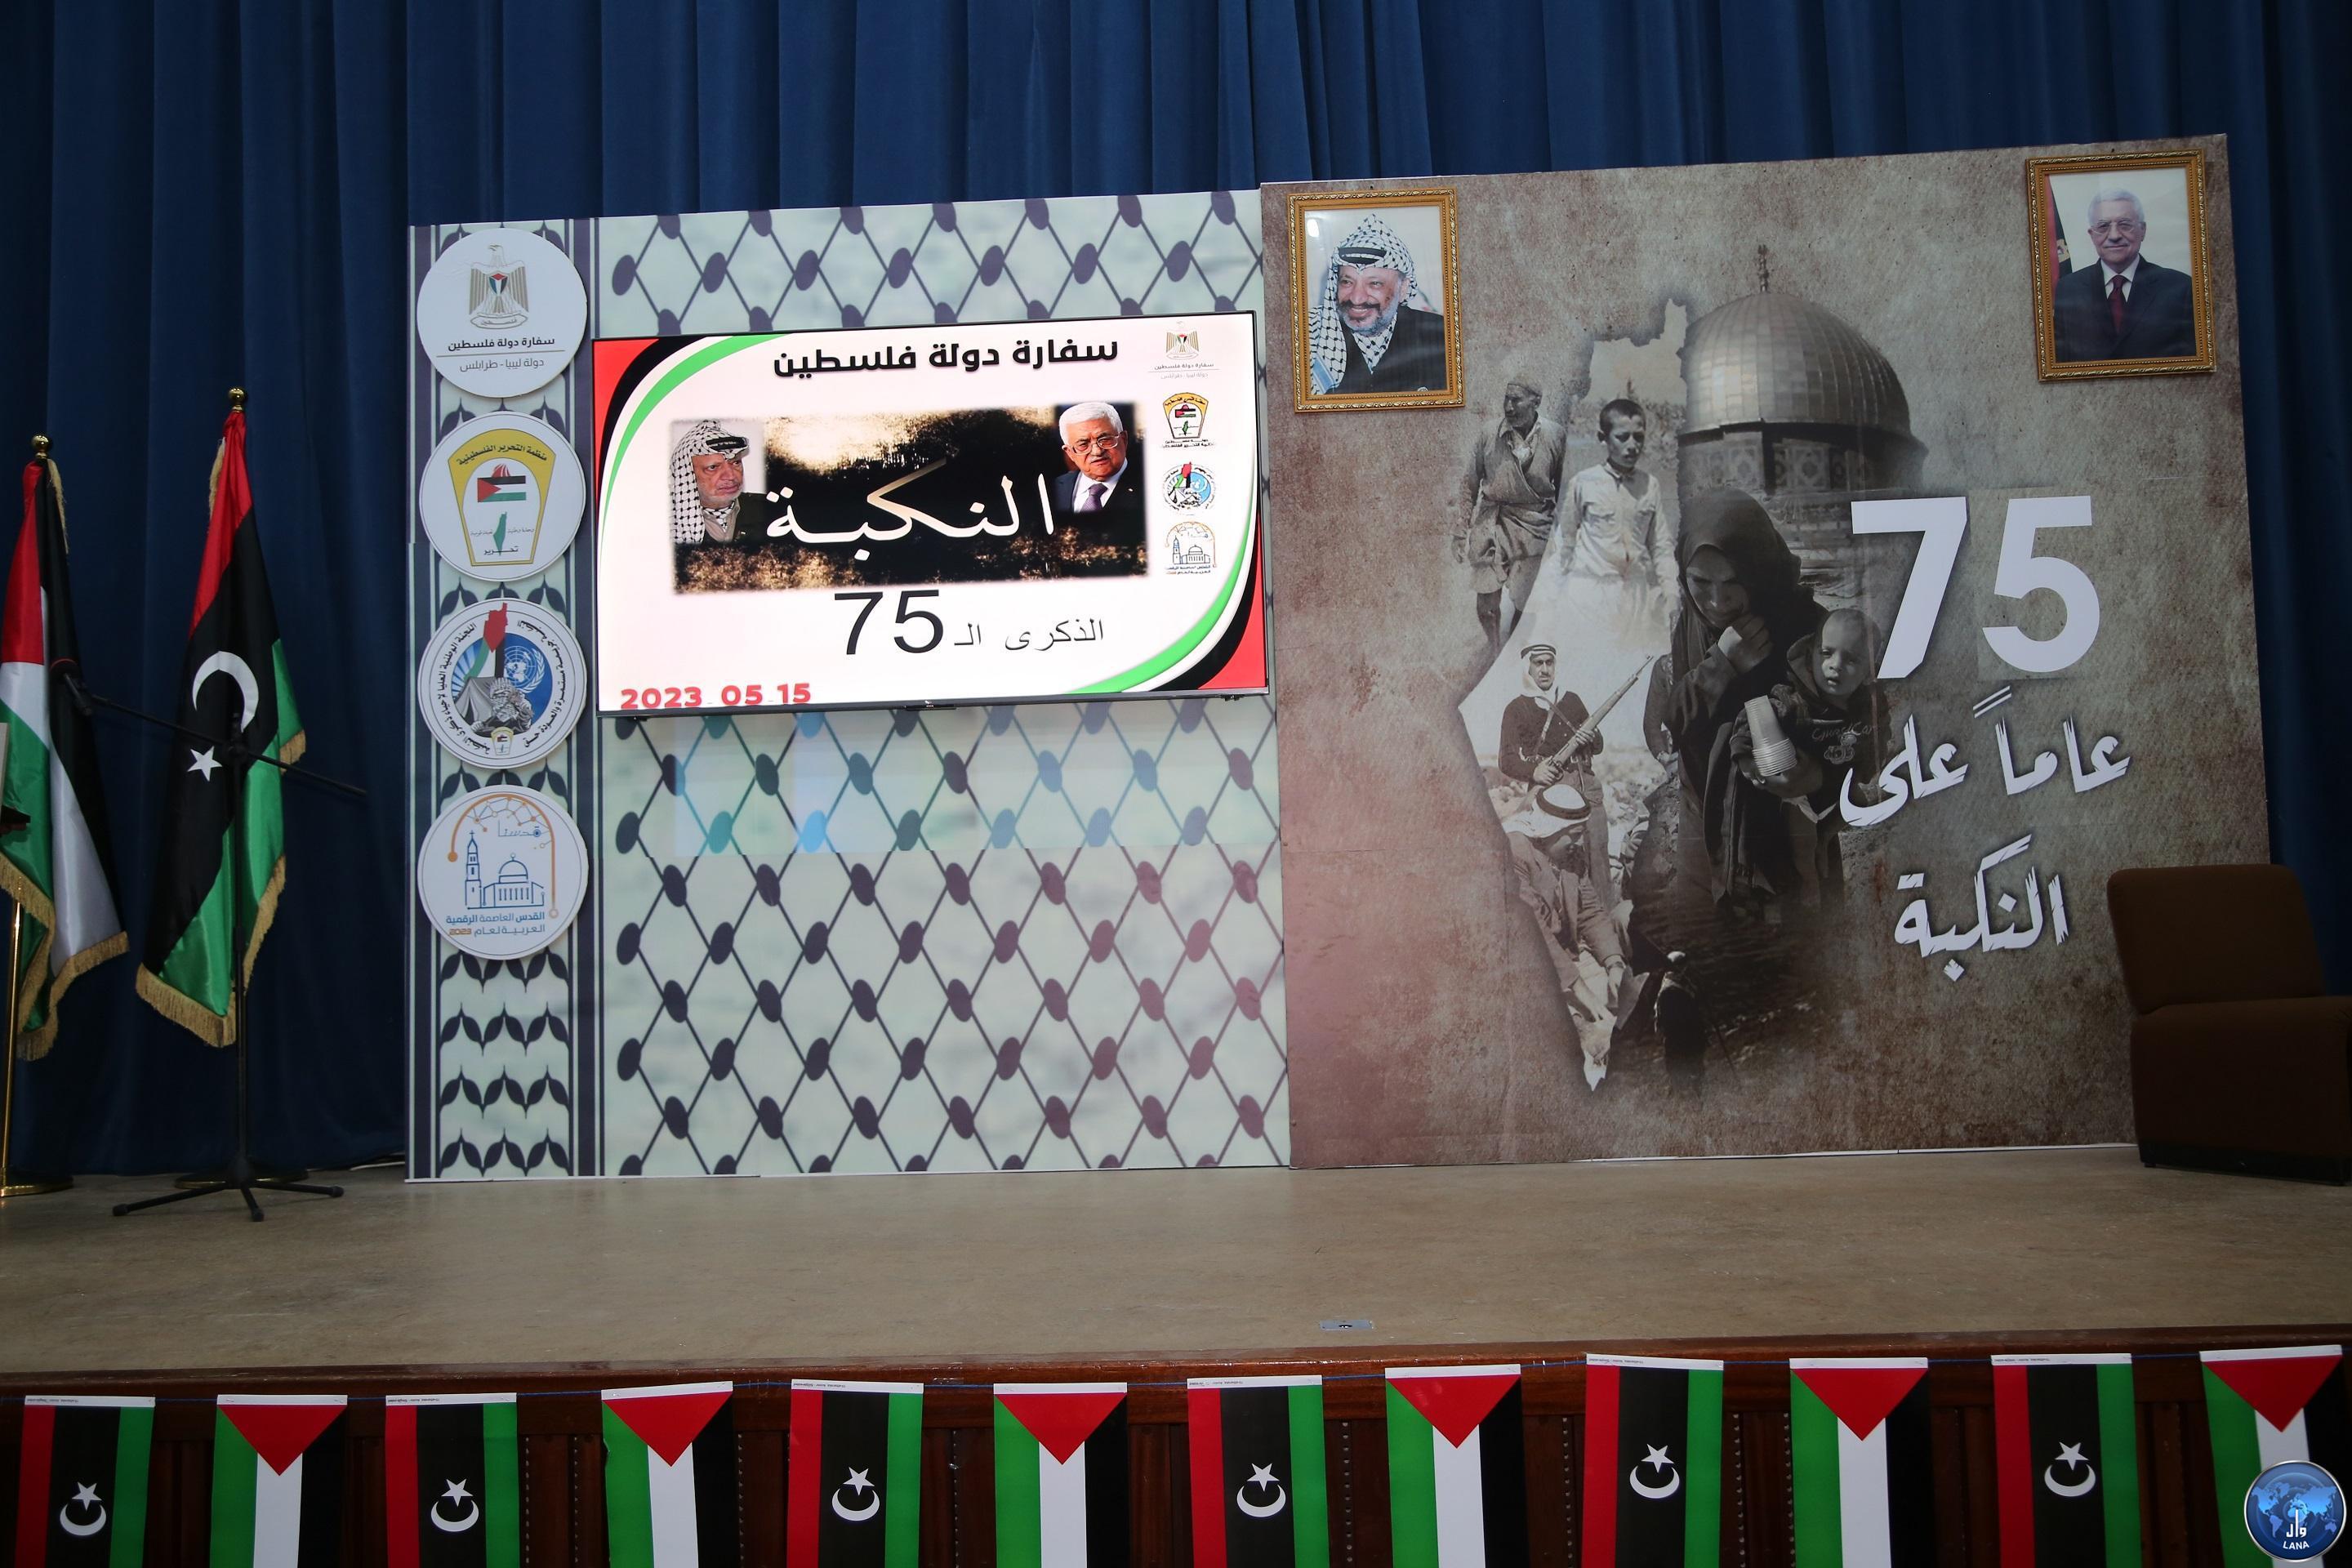 L'ambassade de Palestine en Libye commémore le 75e anniversaire de (Nakba).